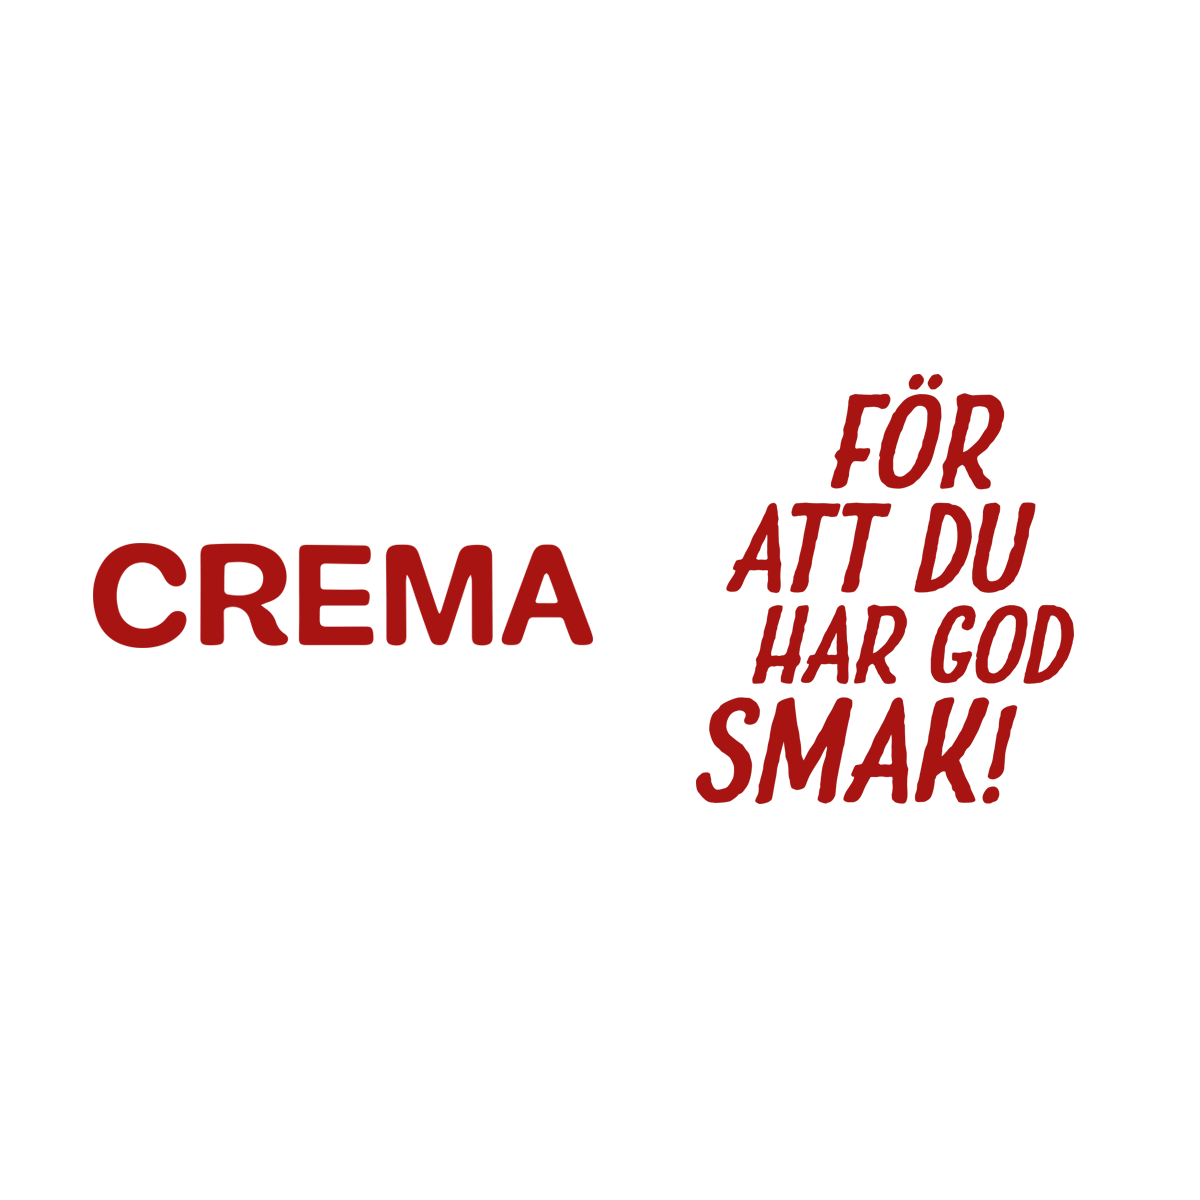 Crema Coffee Days kampanjen är äntligen här!